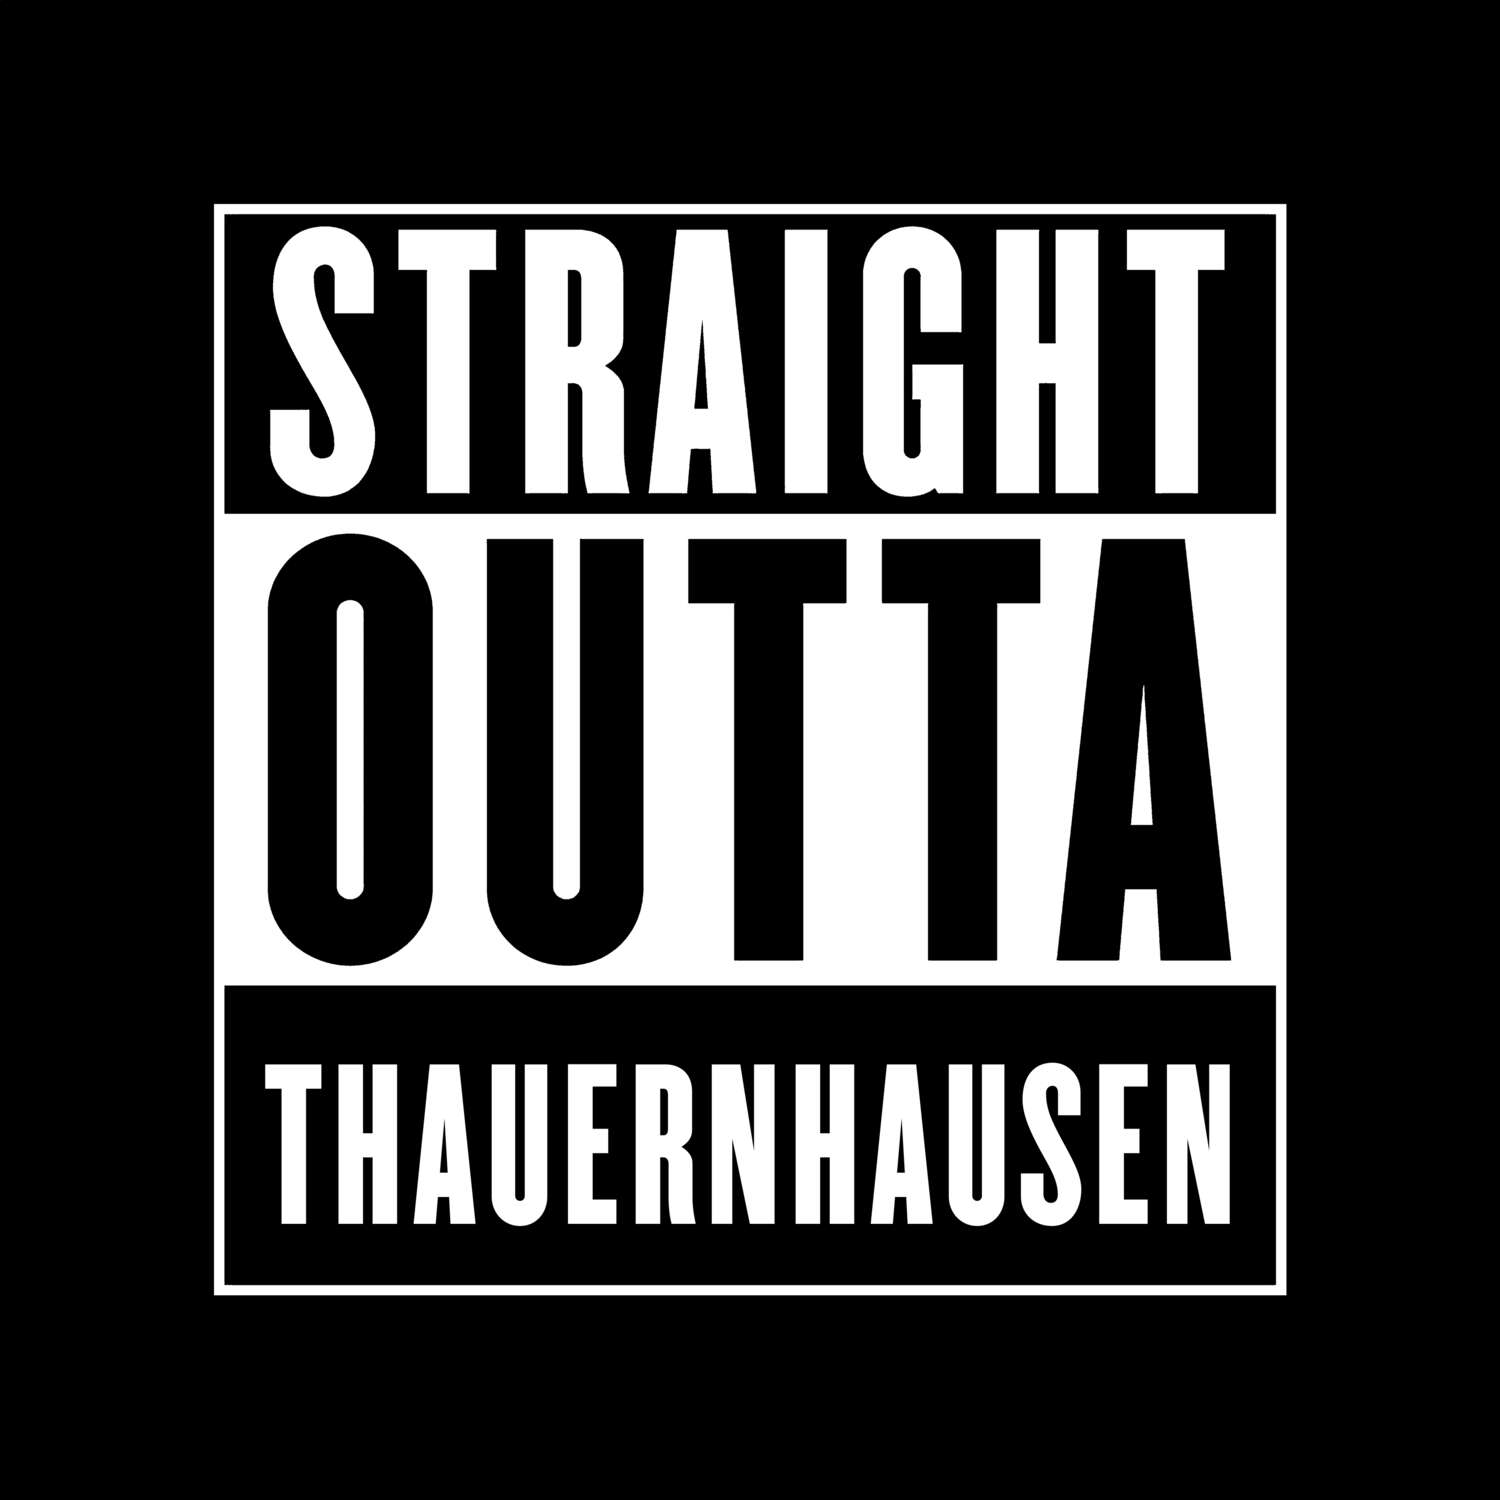 Thauernhausen T-Shirt »Straight Outta«